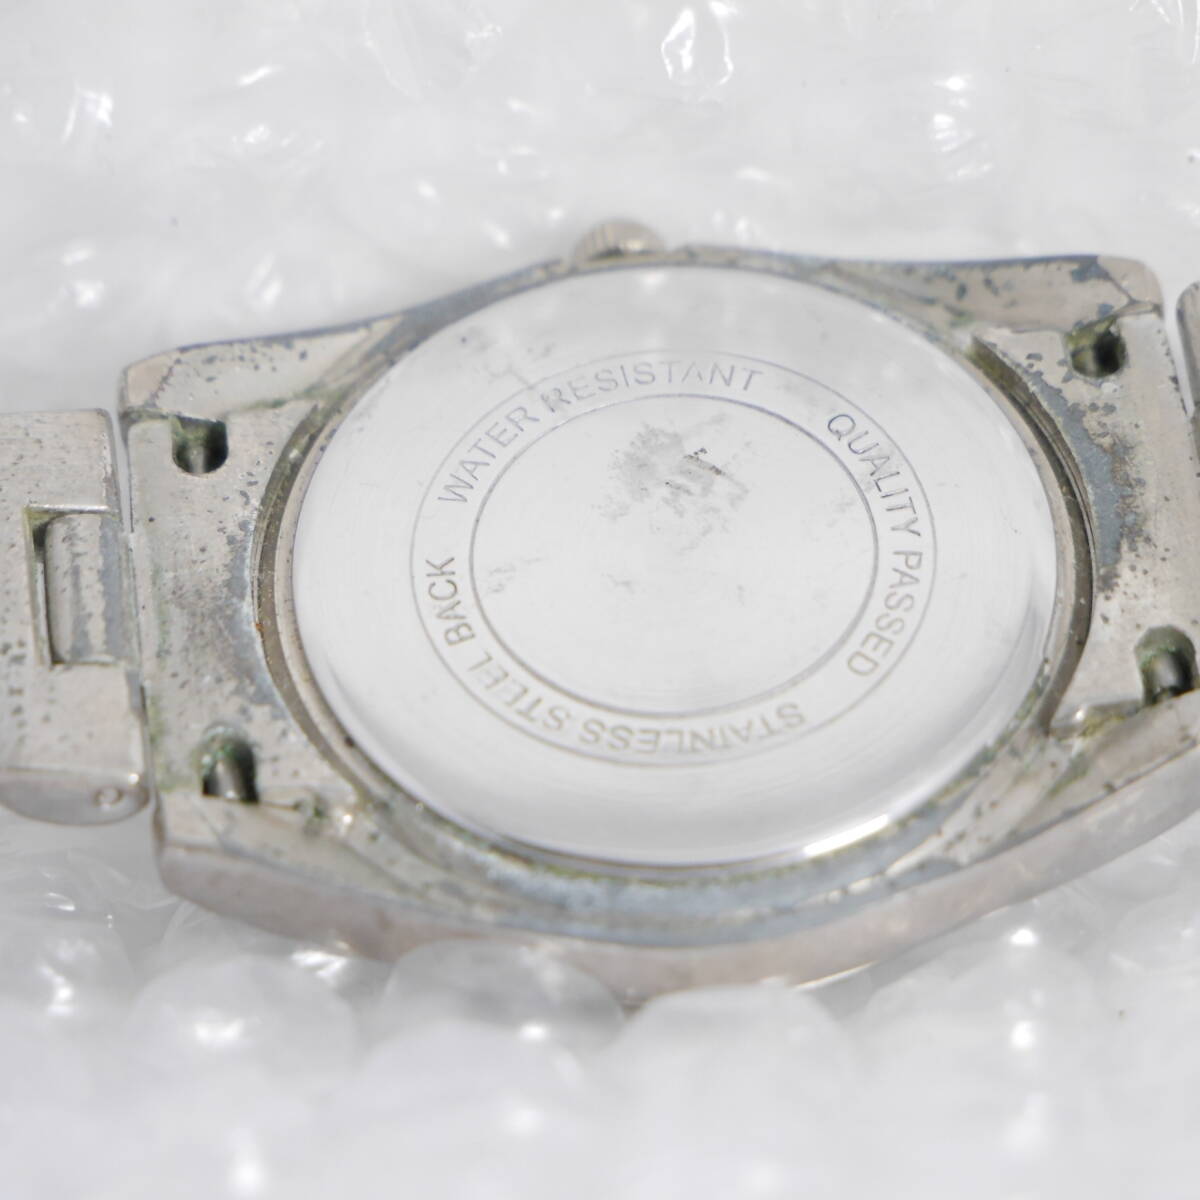  Junk наручные часы ROIS GENEVE 10 DIAMONDS PLATINUM Lois O406 работоспособность не проверялась подробности неизвестен 